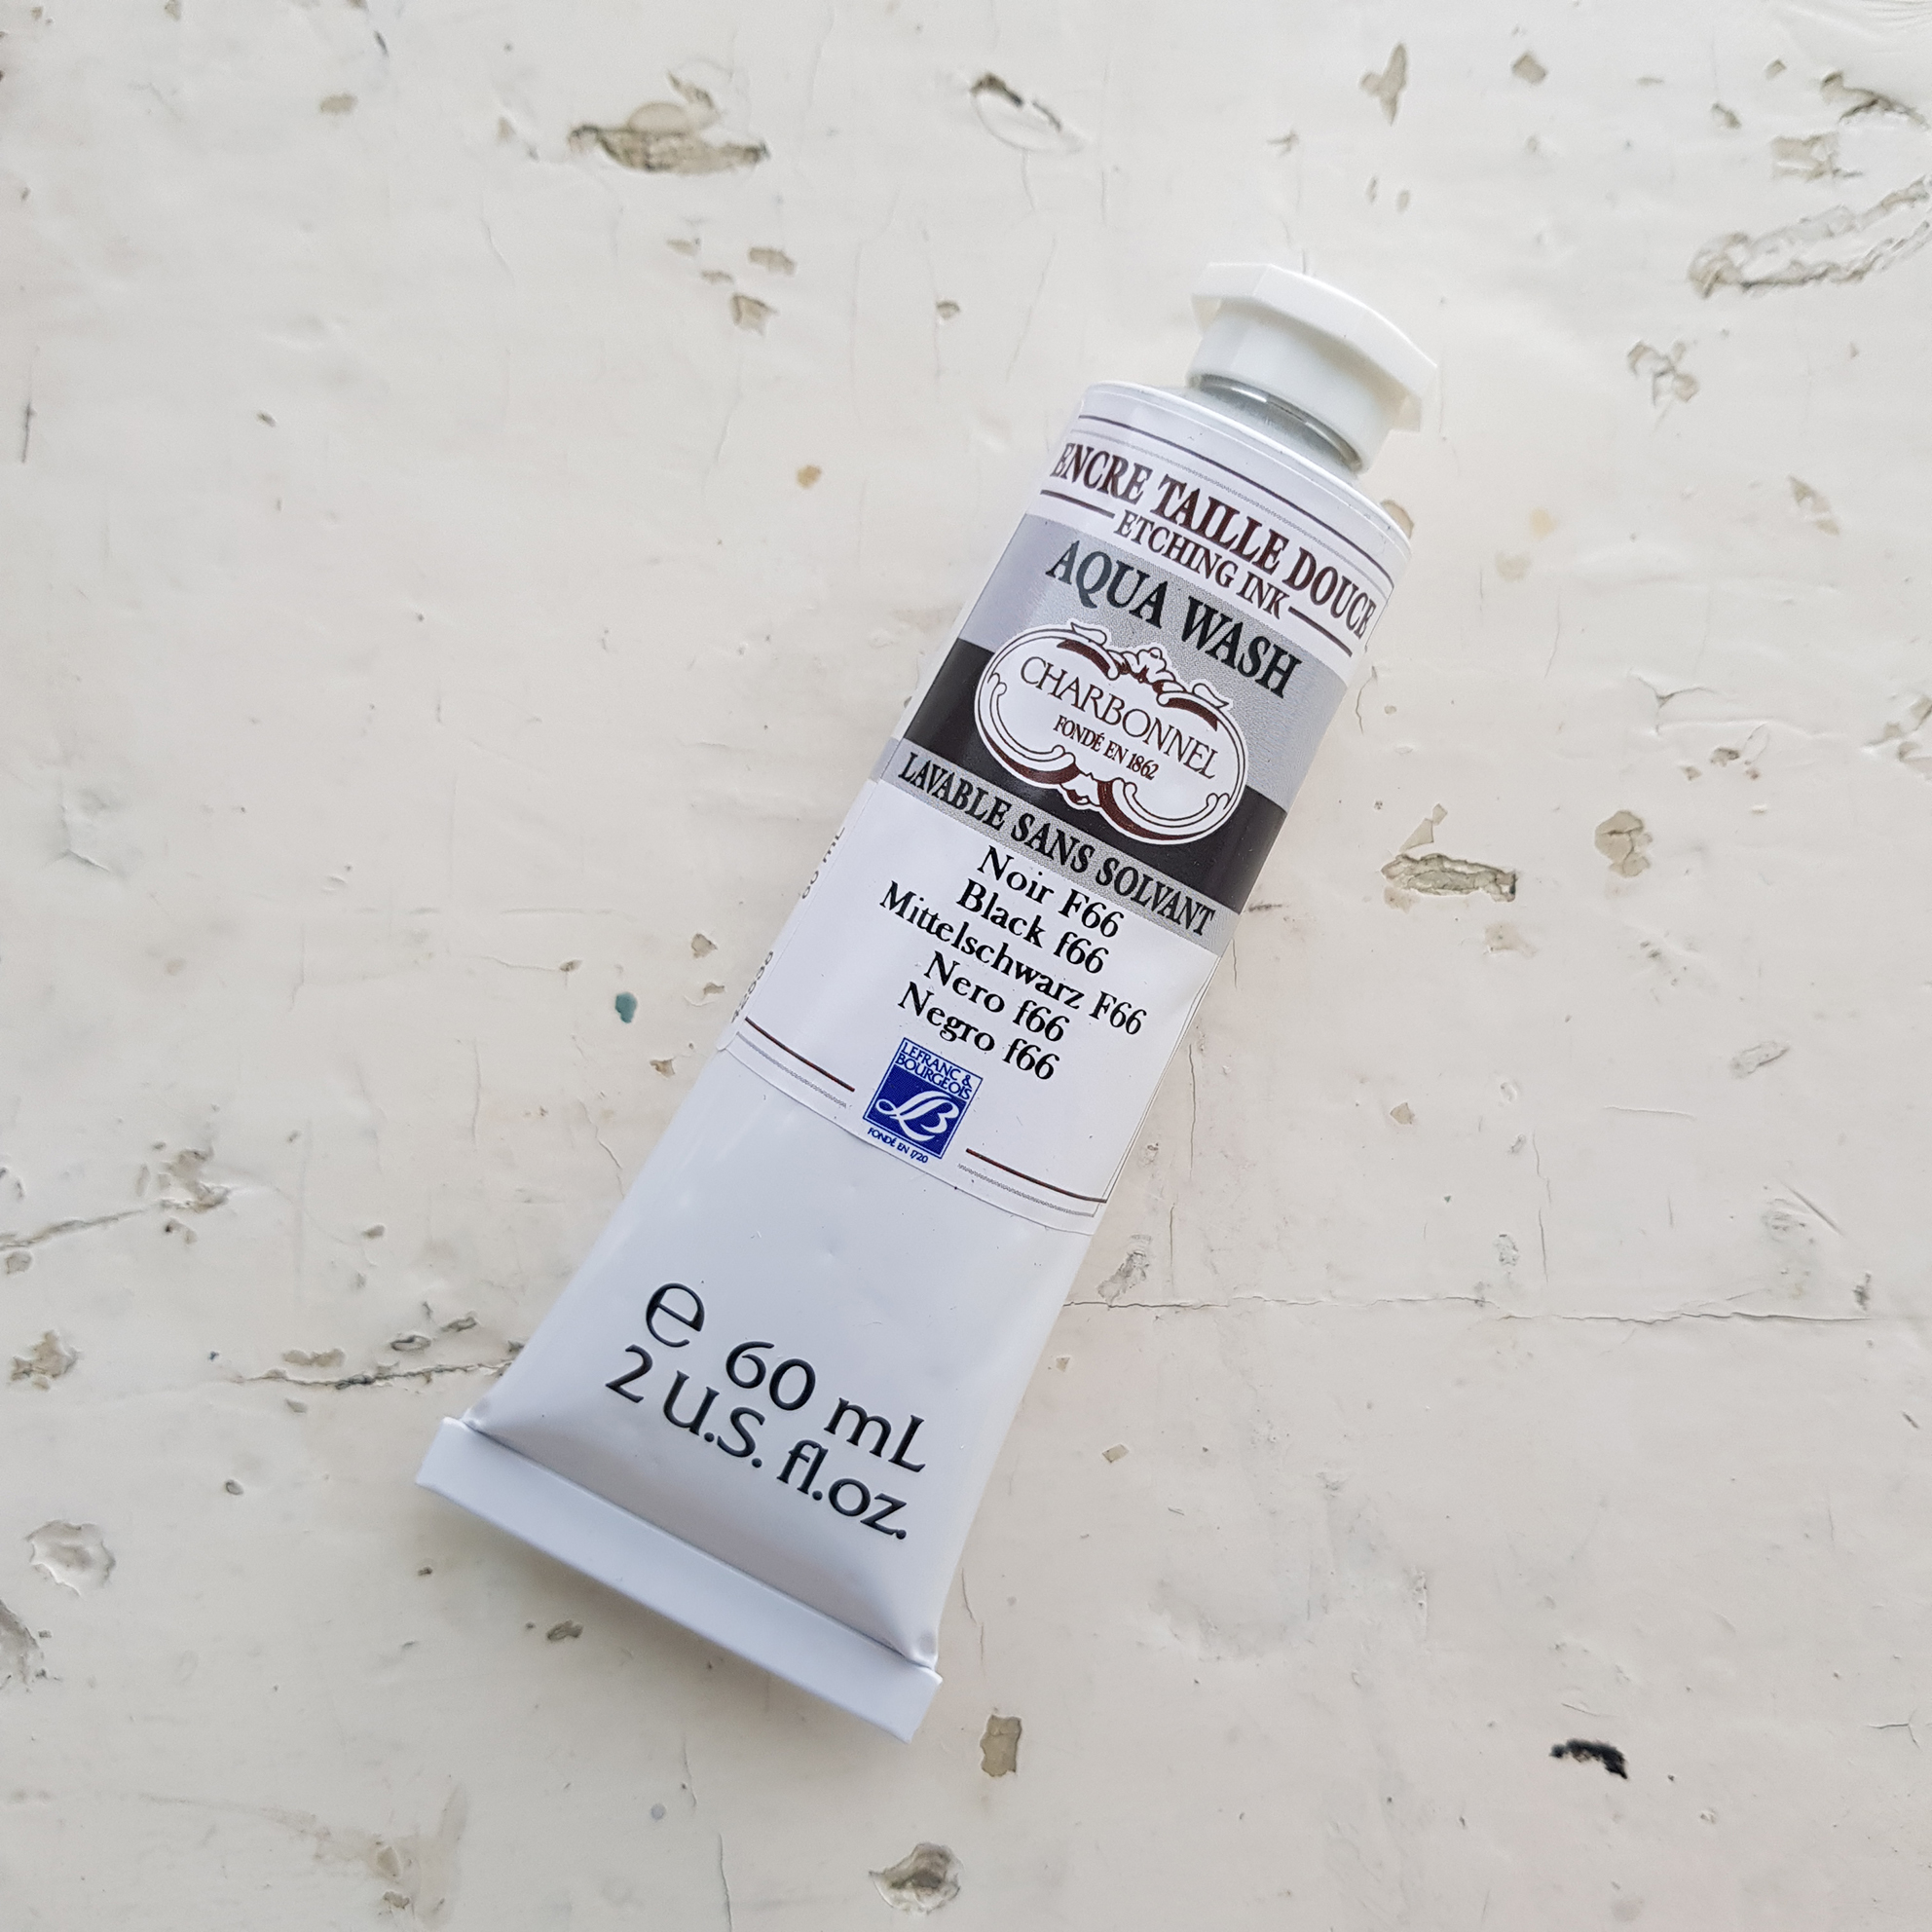 Офортная краска Charbonnel Aqua Wash 60 мл — Black F66